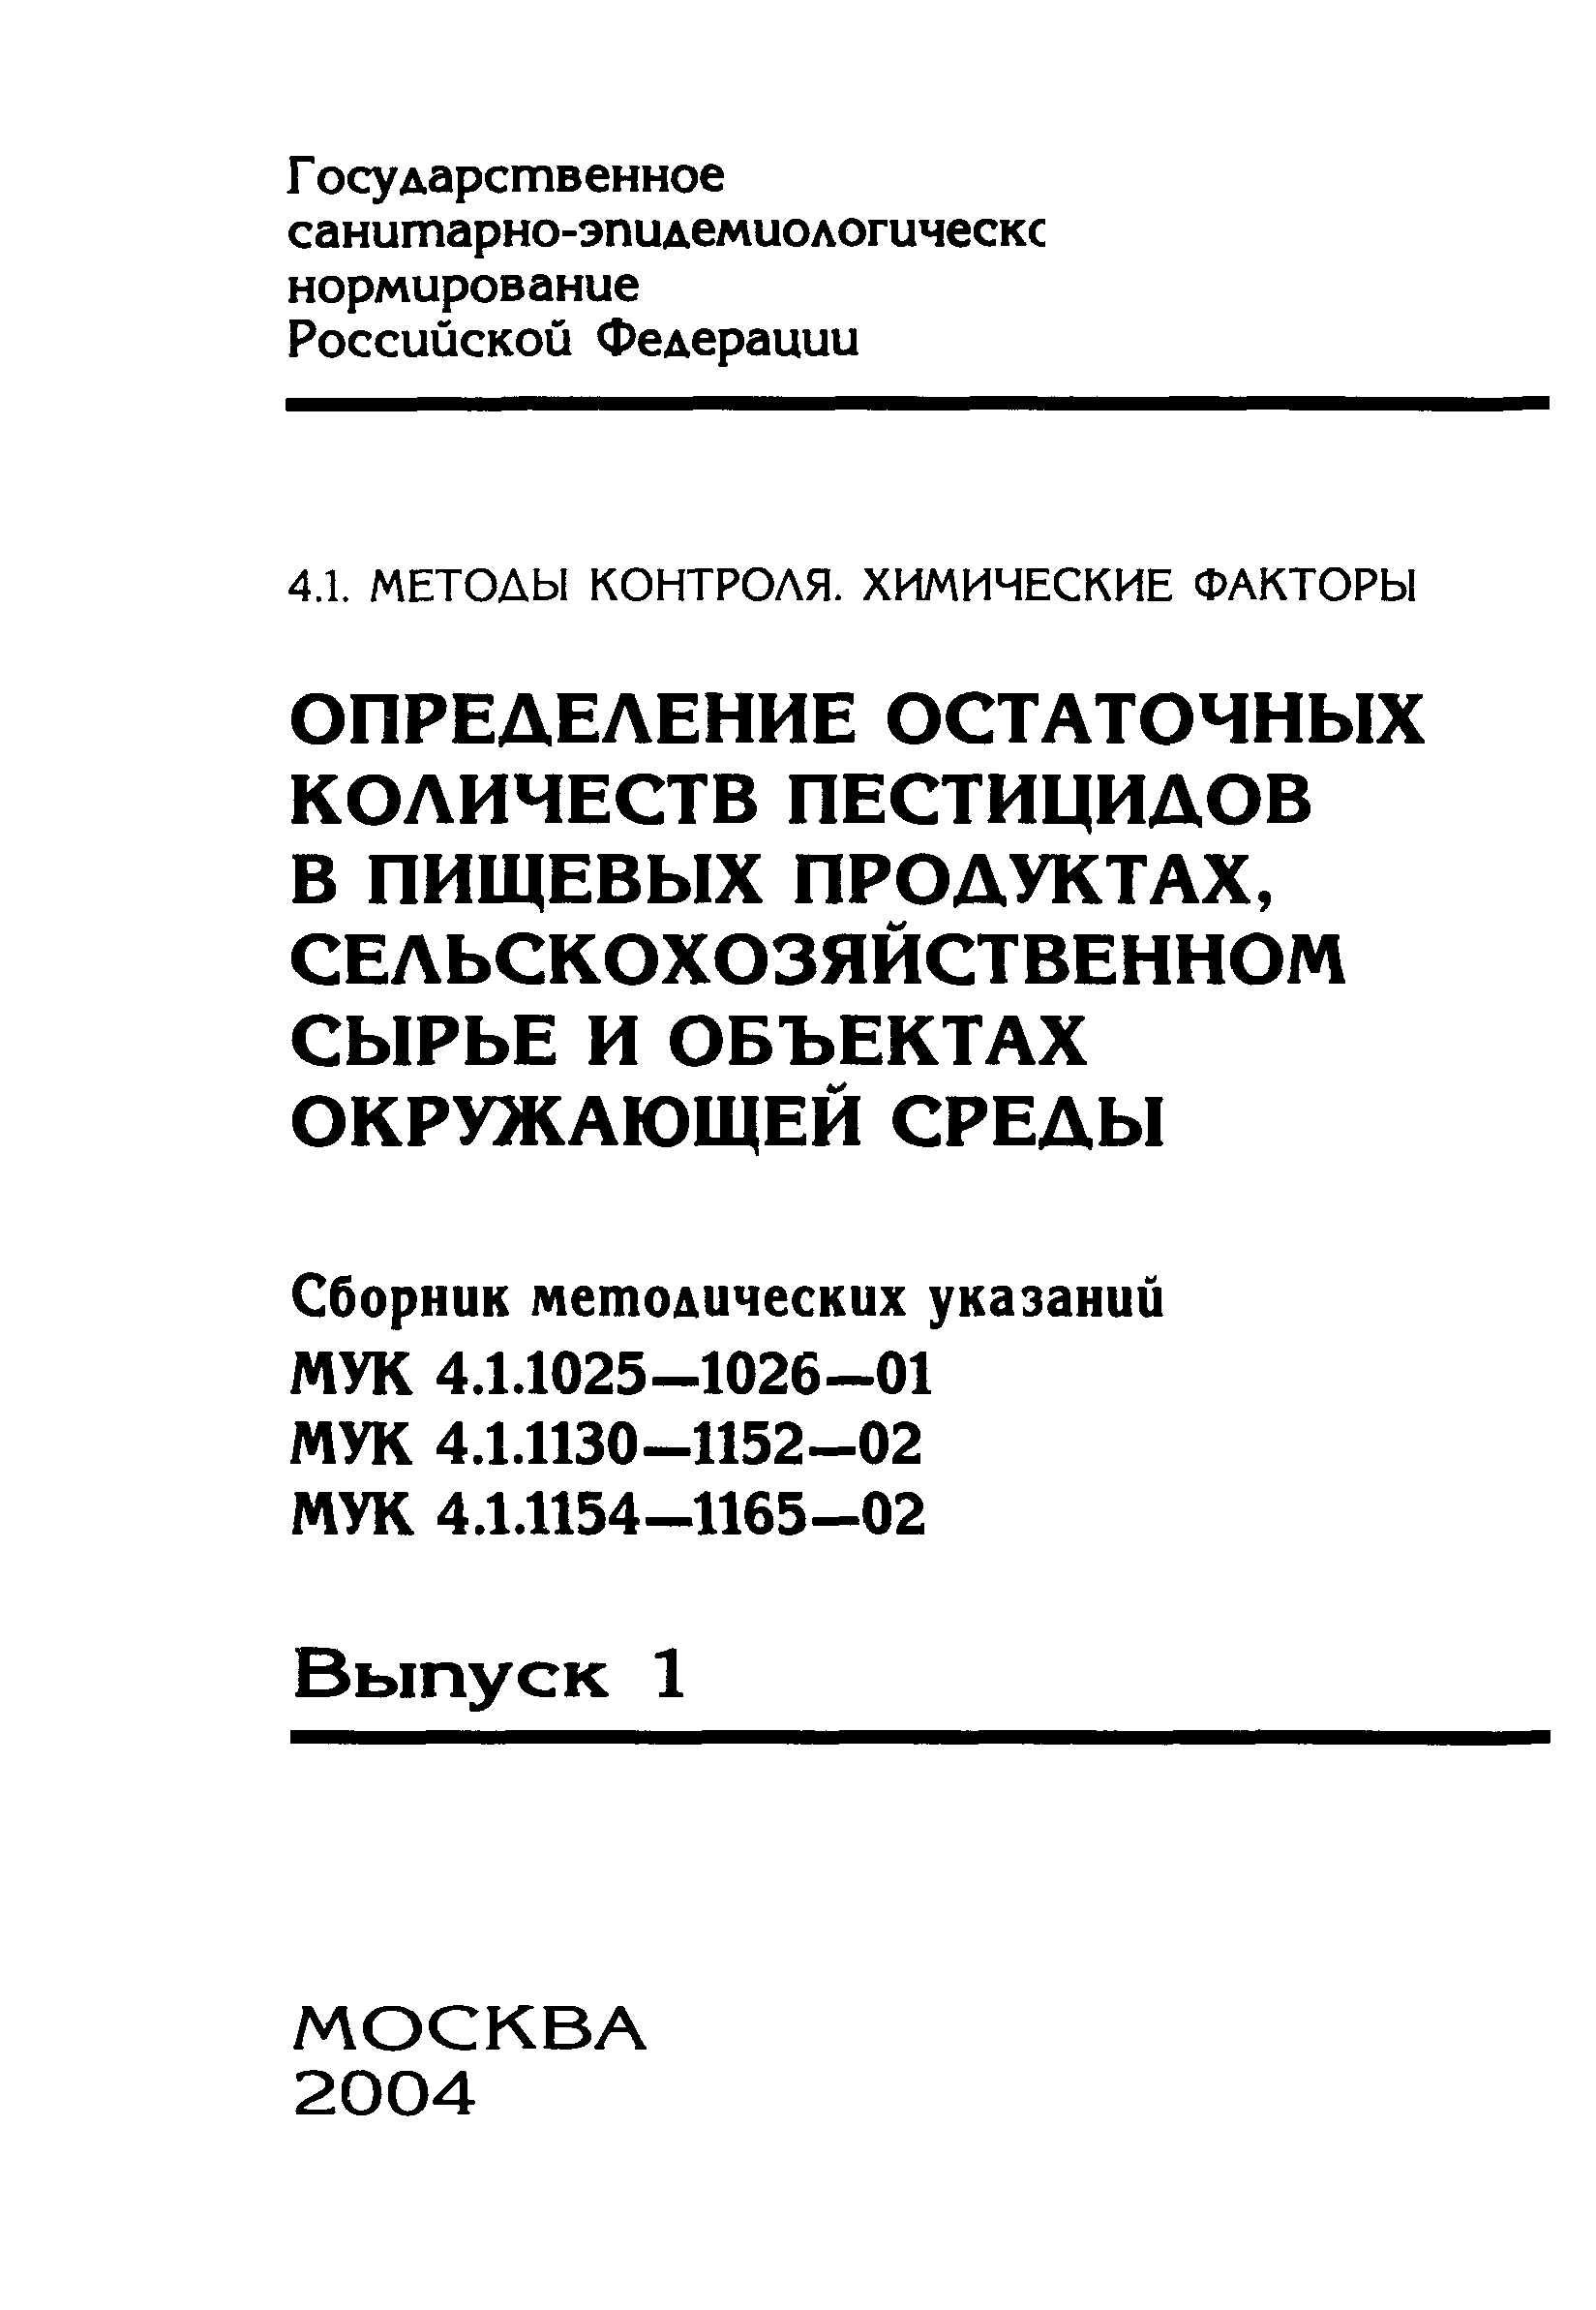 МУК 4.1.1142-02